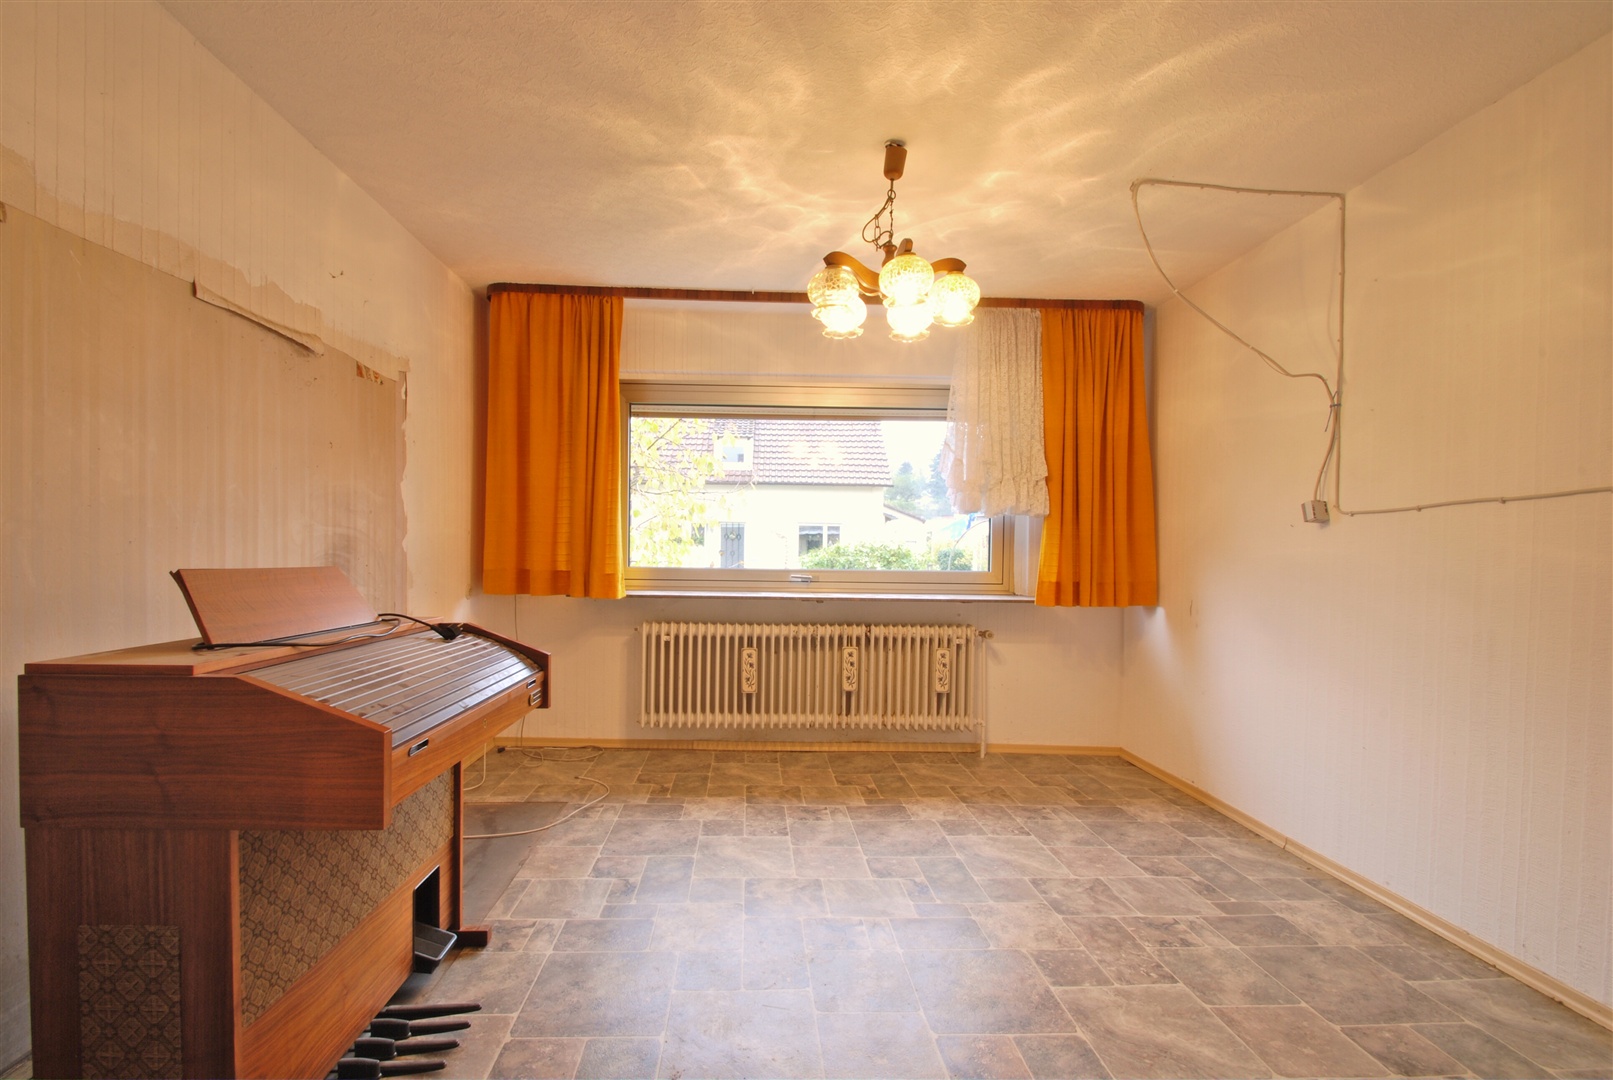 Wohnzimmer mit Blick zur Straße - Oliver Reifferscheid - Immobilienmakler Darmstadt